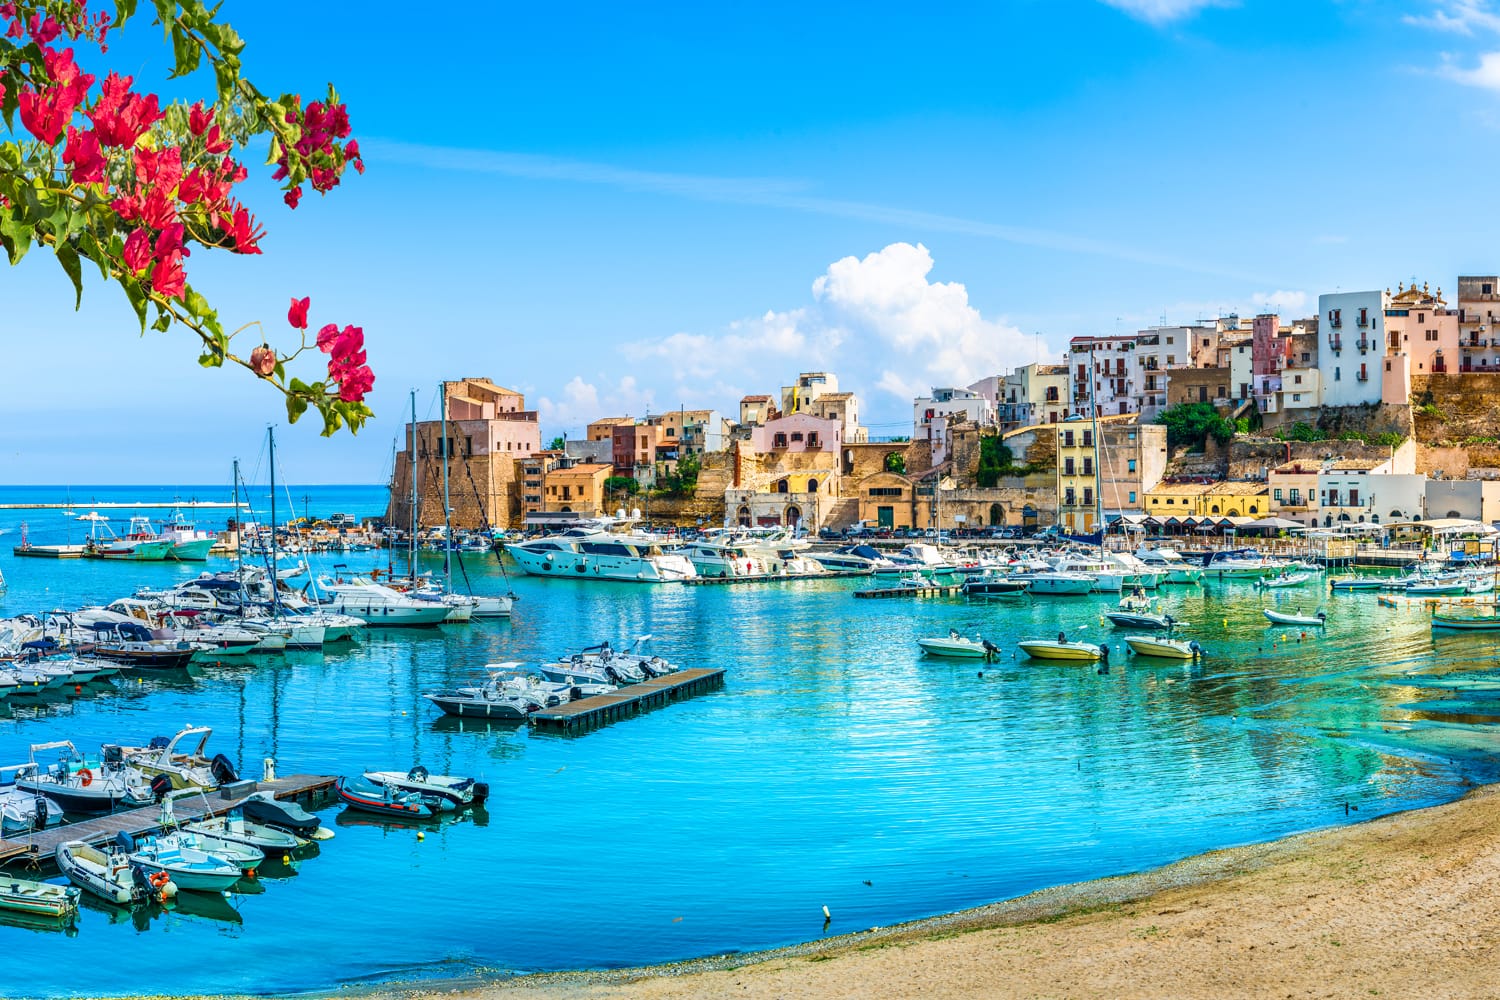 Λιμάνι της Σικελίας Castellammare del Golfo, καταπληκτικό παραθαλάσσιο χωριό του νησιού της Σικελίας, επαρχία Trapani, Ιταλία